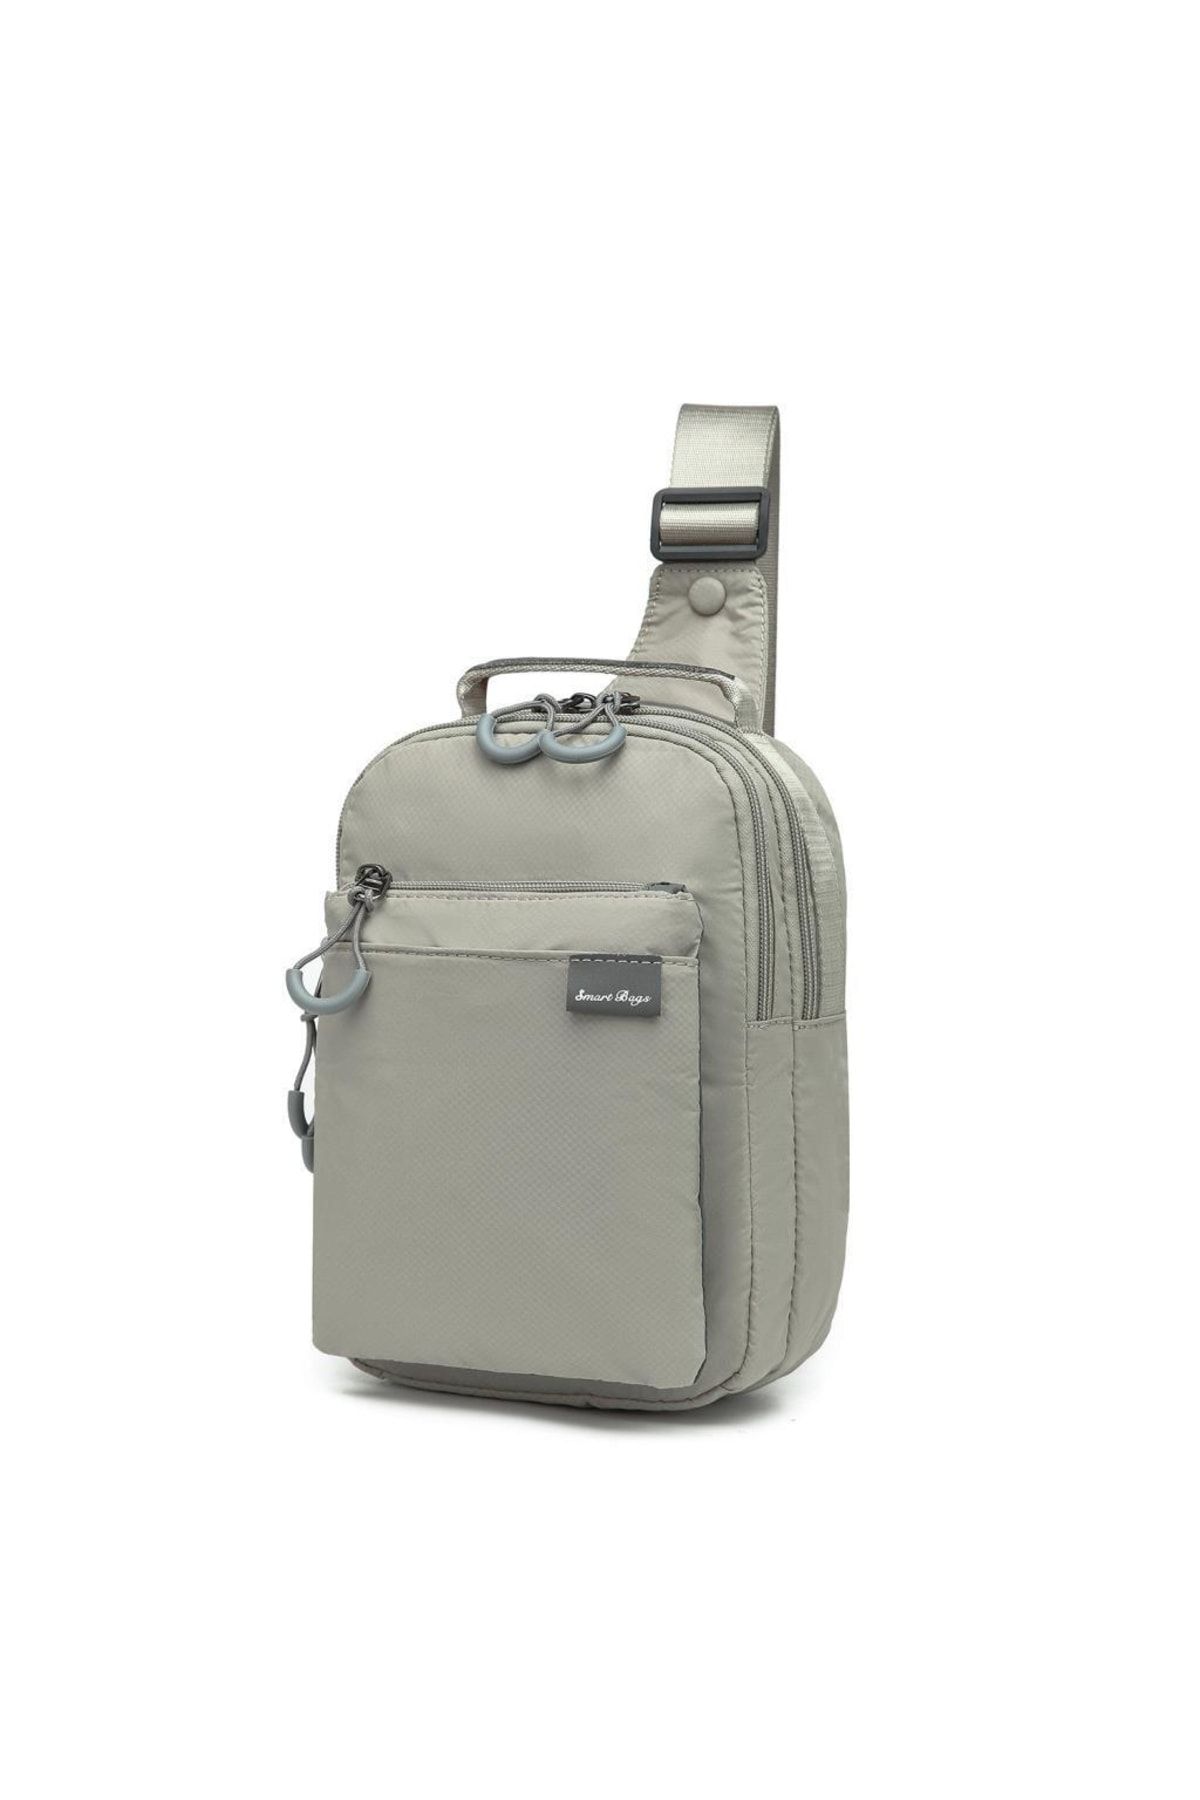 Smart Bags Ekstra Hafif Uniseks Bodybag Postacı Çantası 3151